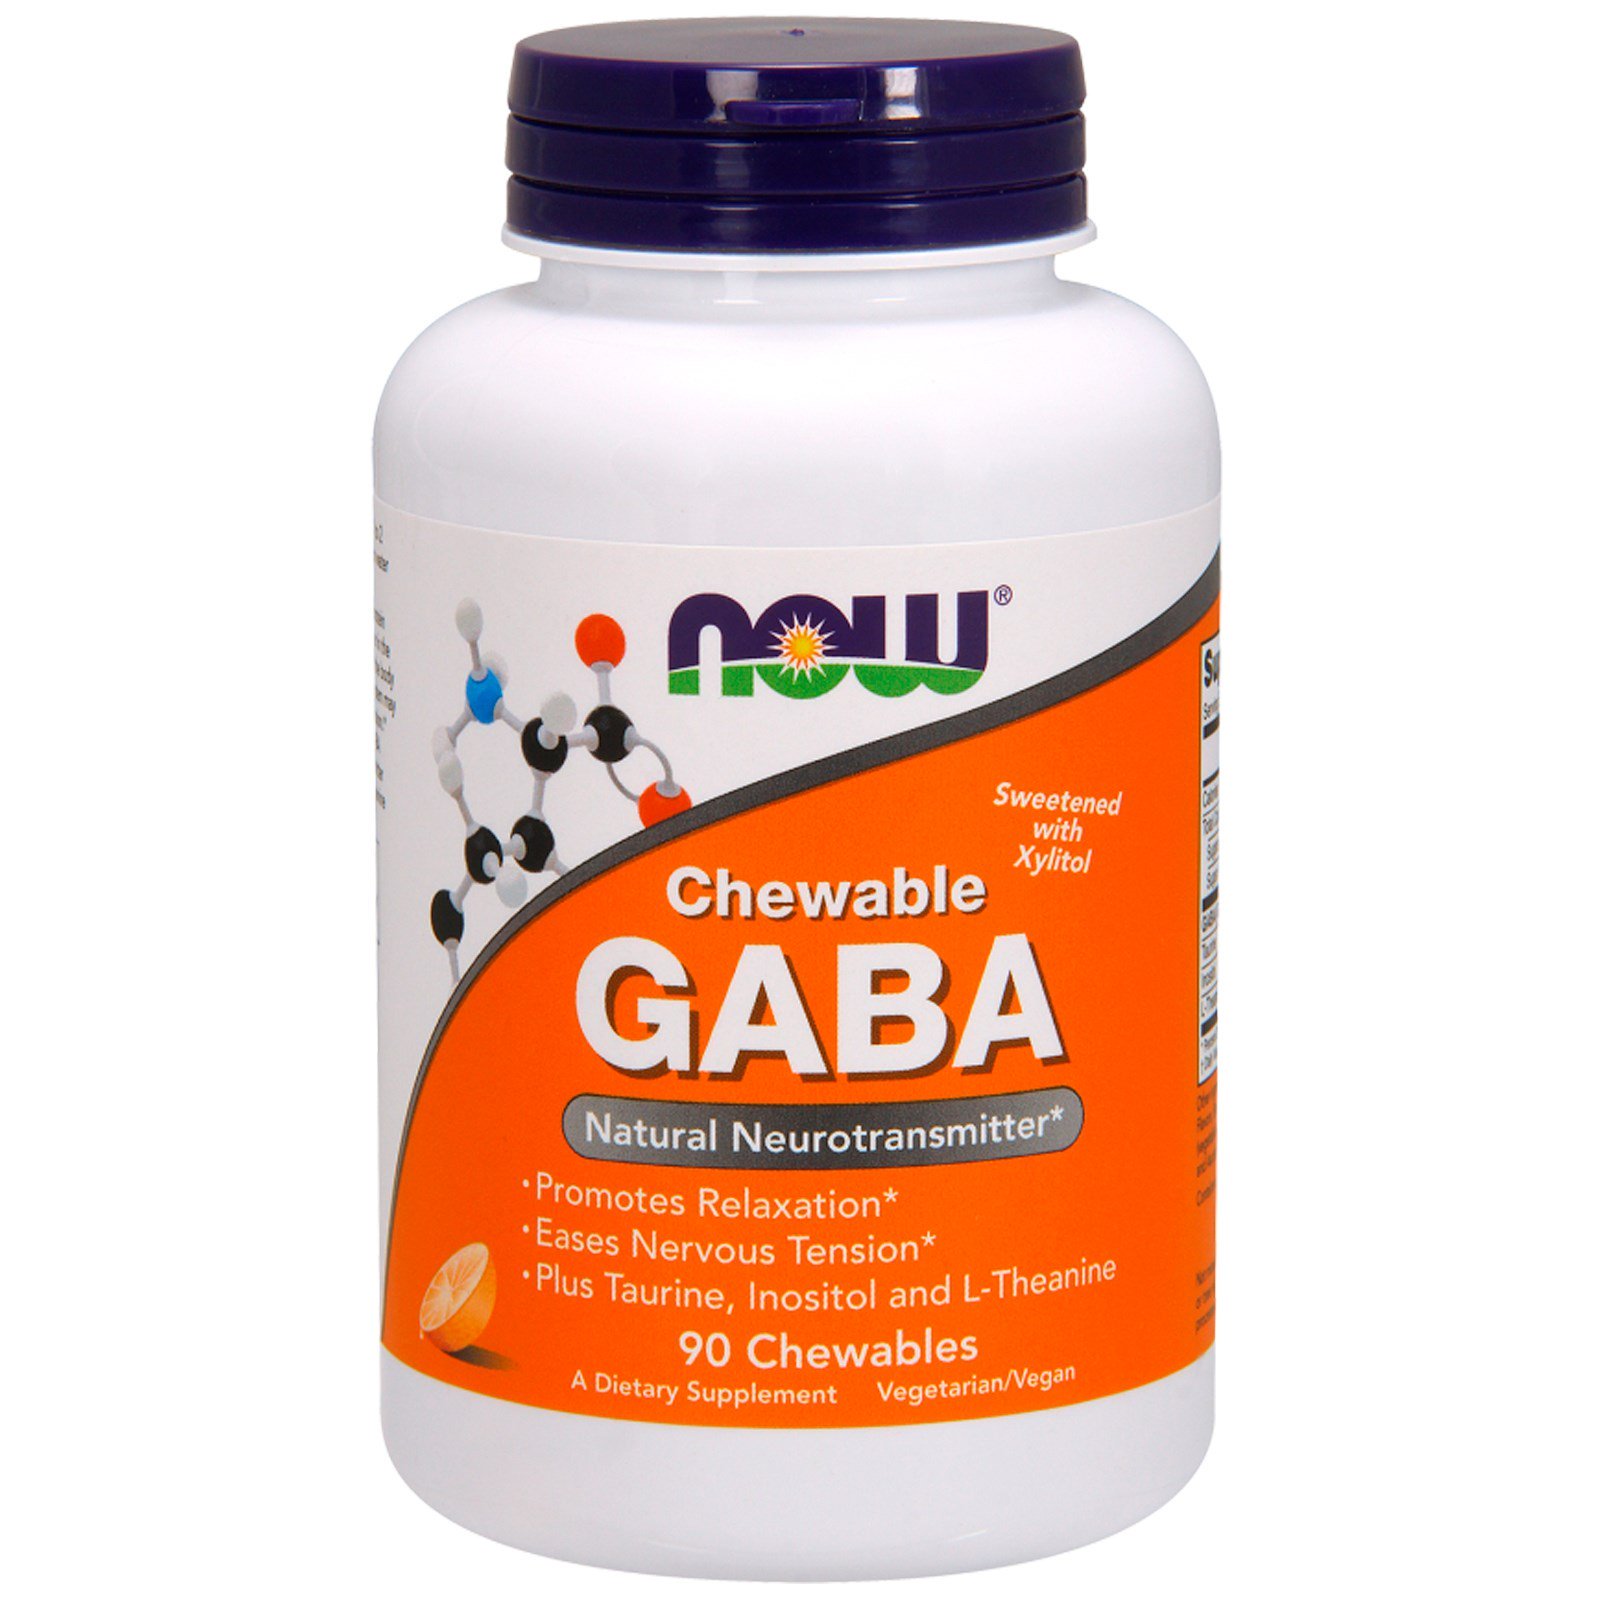 NOW GABA, ГАБА Гамма-Аминомасляная Кислота (ГАМК) - 90 таблеток, апельсиновый вкус